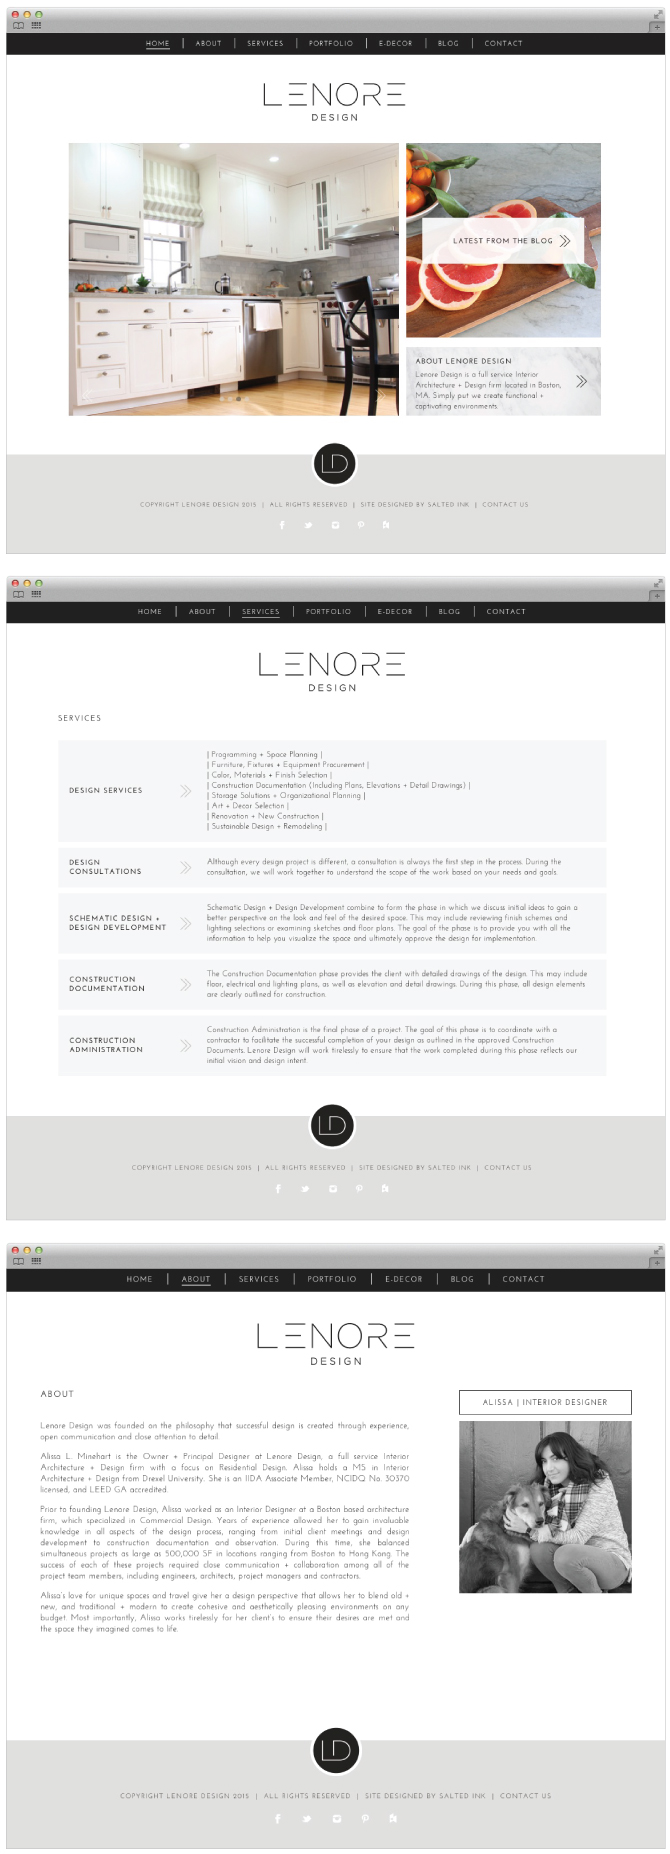 Lenore-Design-Brand-WEBSITE